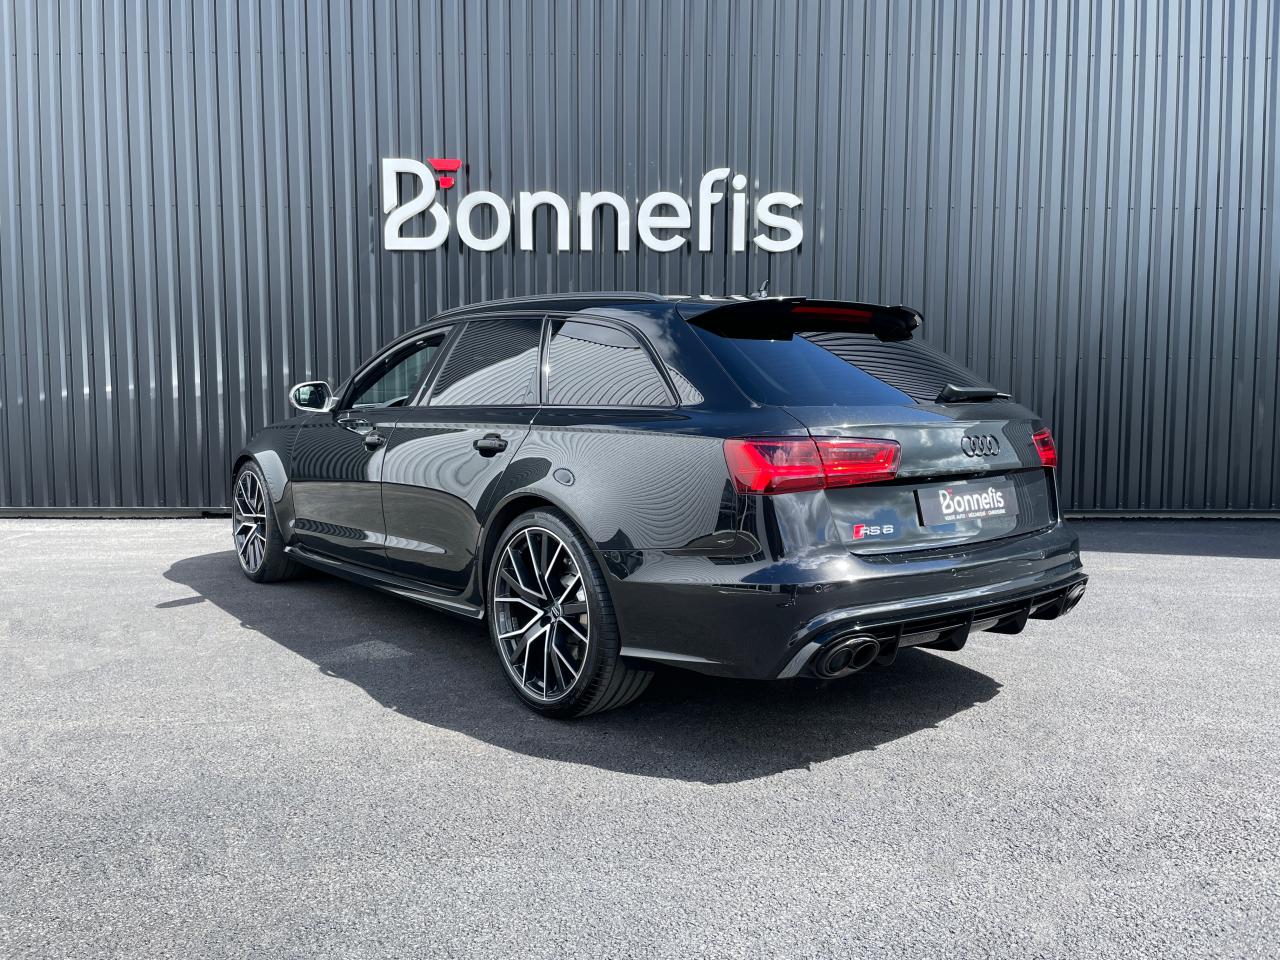 BONNEFIS AUTOMOBILE - AUDI-RS6-RS6 Avant Quattro 4.0i V8 TFSI - 605 - BVA  Tiptronic RS6 AVANT 2013 BREAK Performance PHASE 2